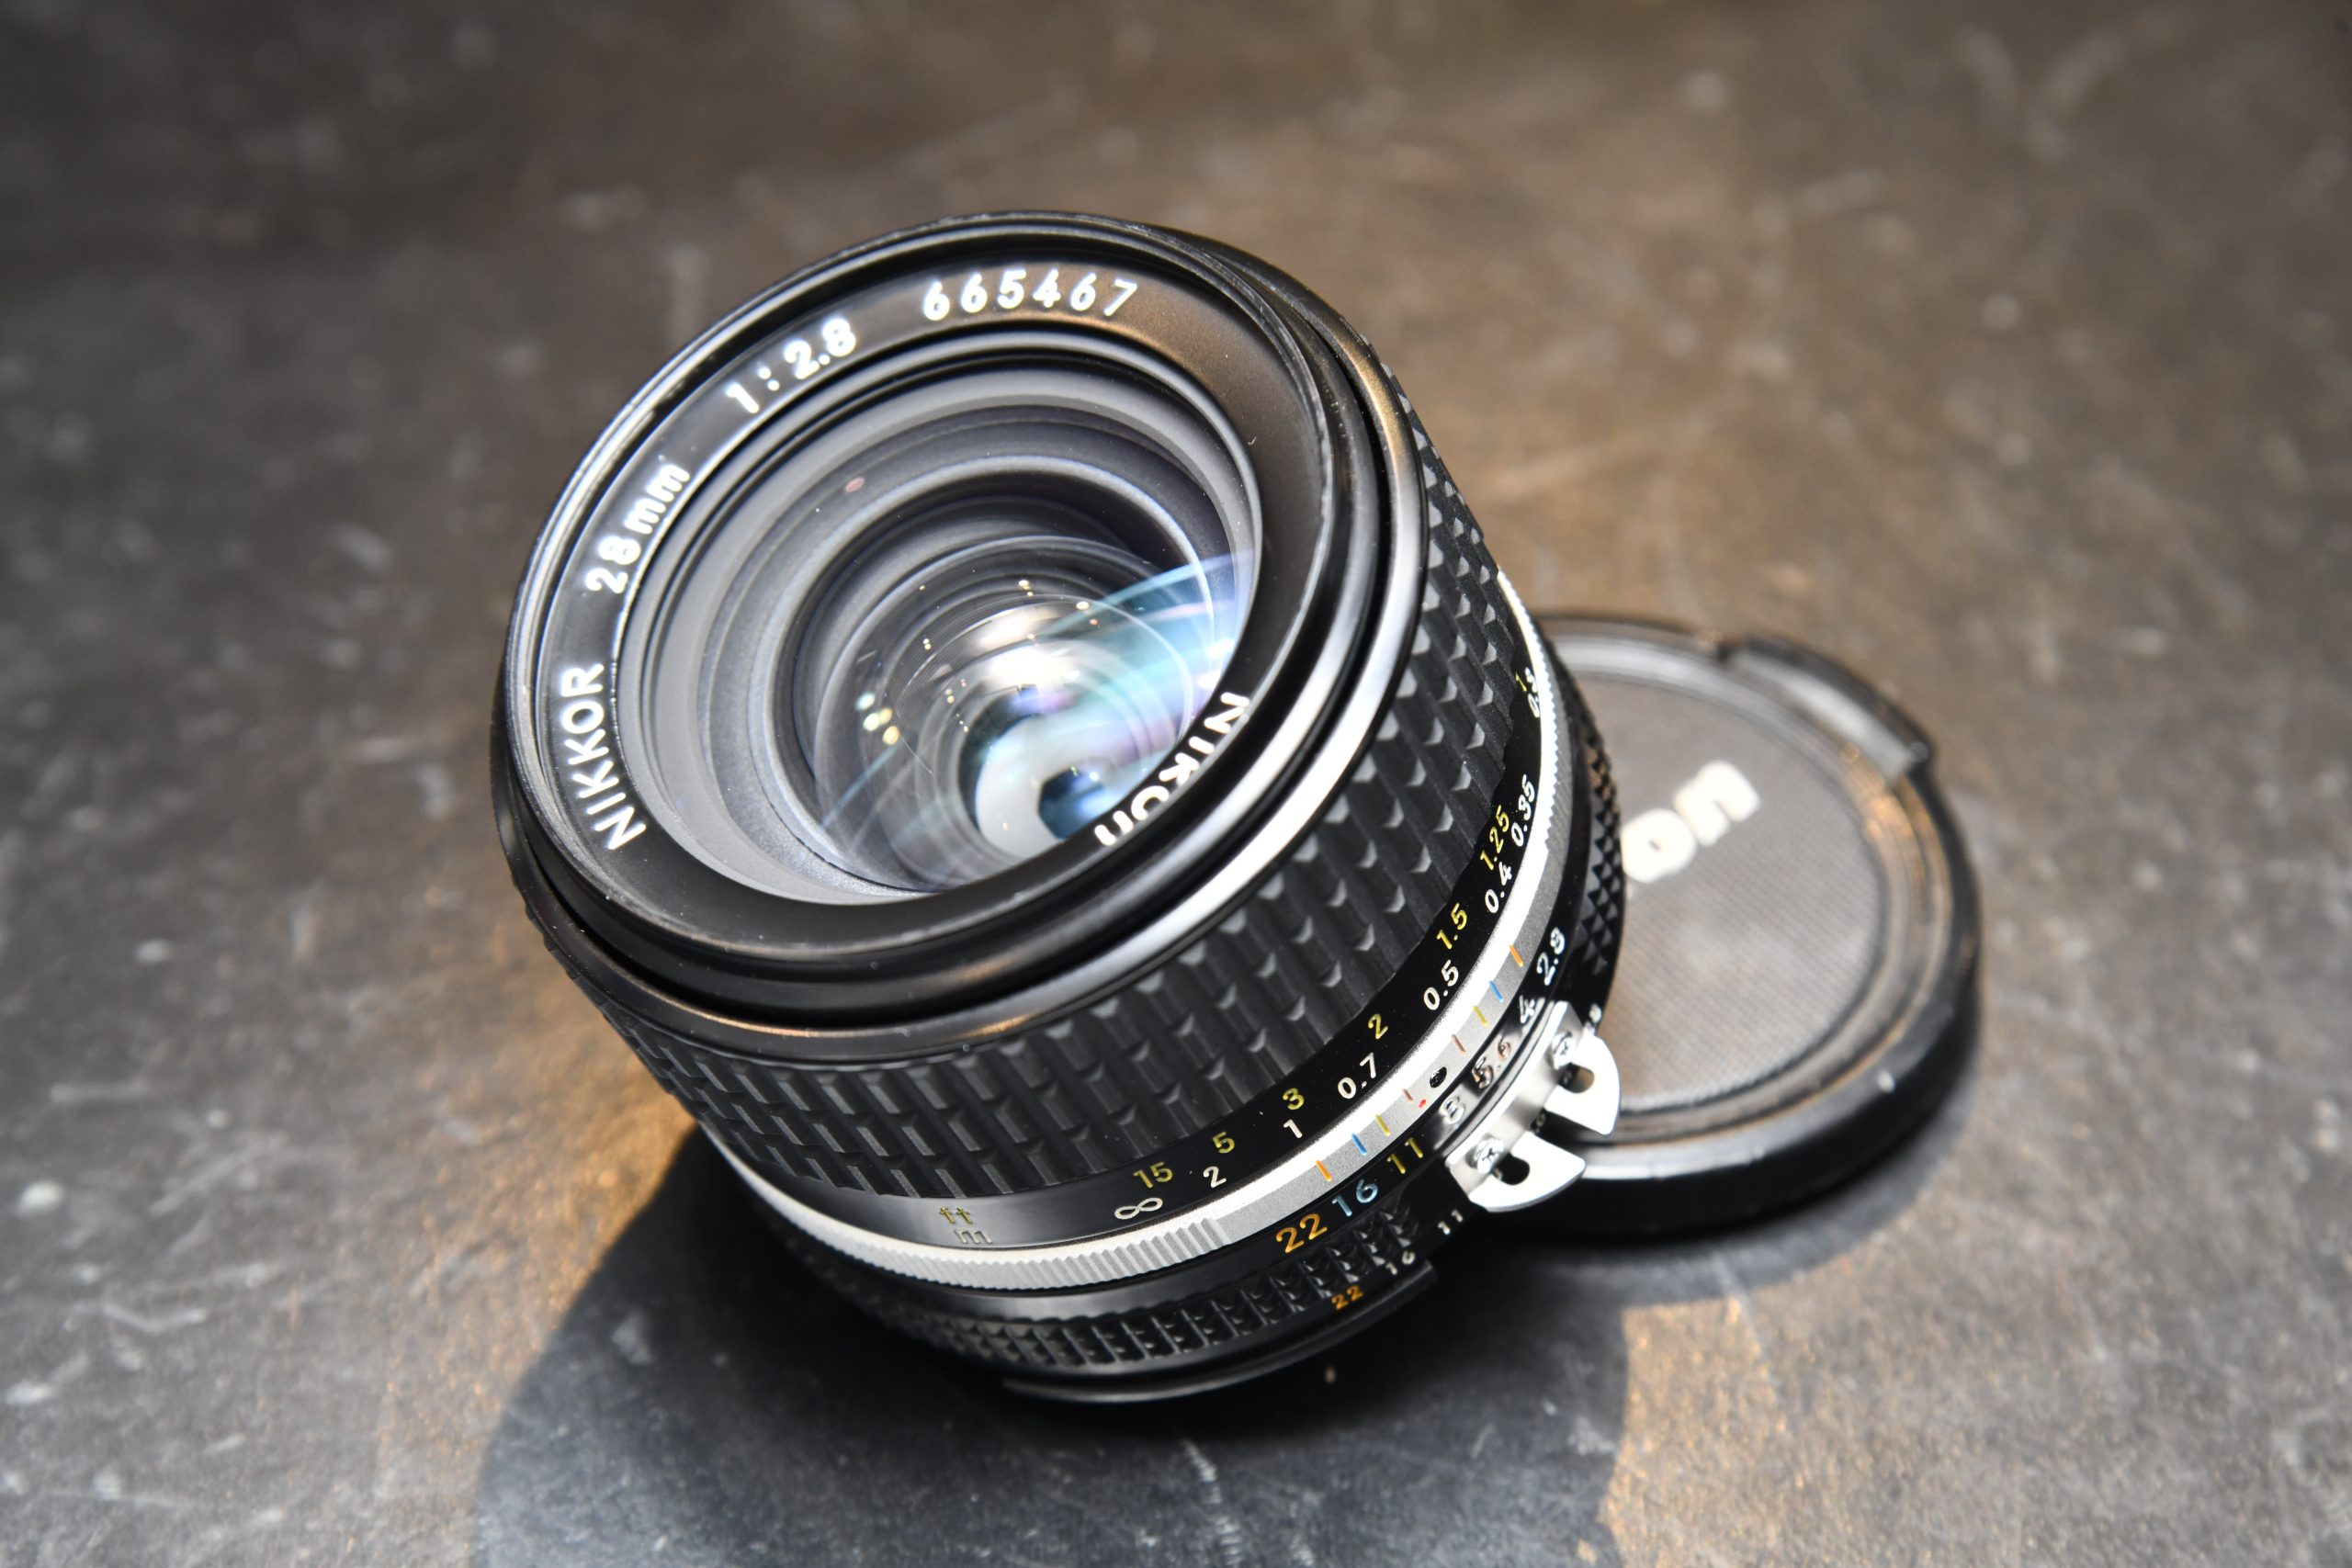 【整備済】 ニコン Nikon 28mm F2.8 Ai Fマウント レンズ